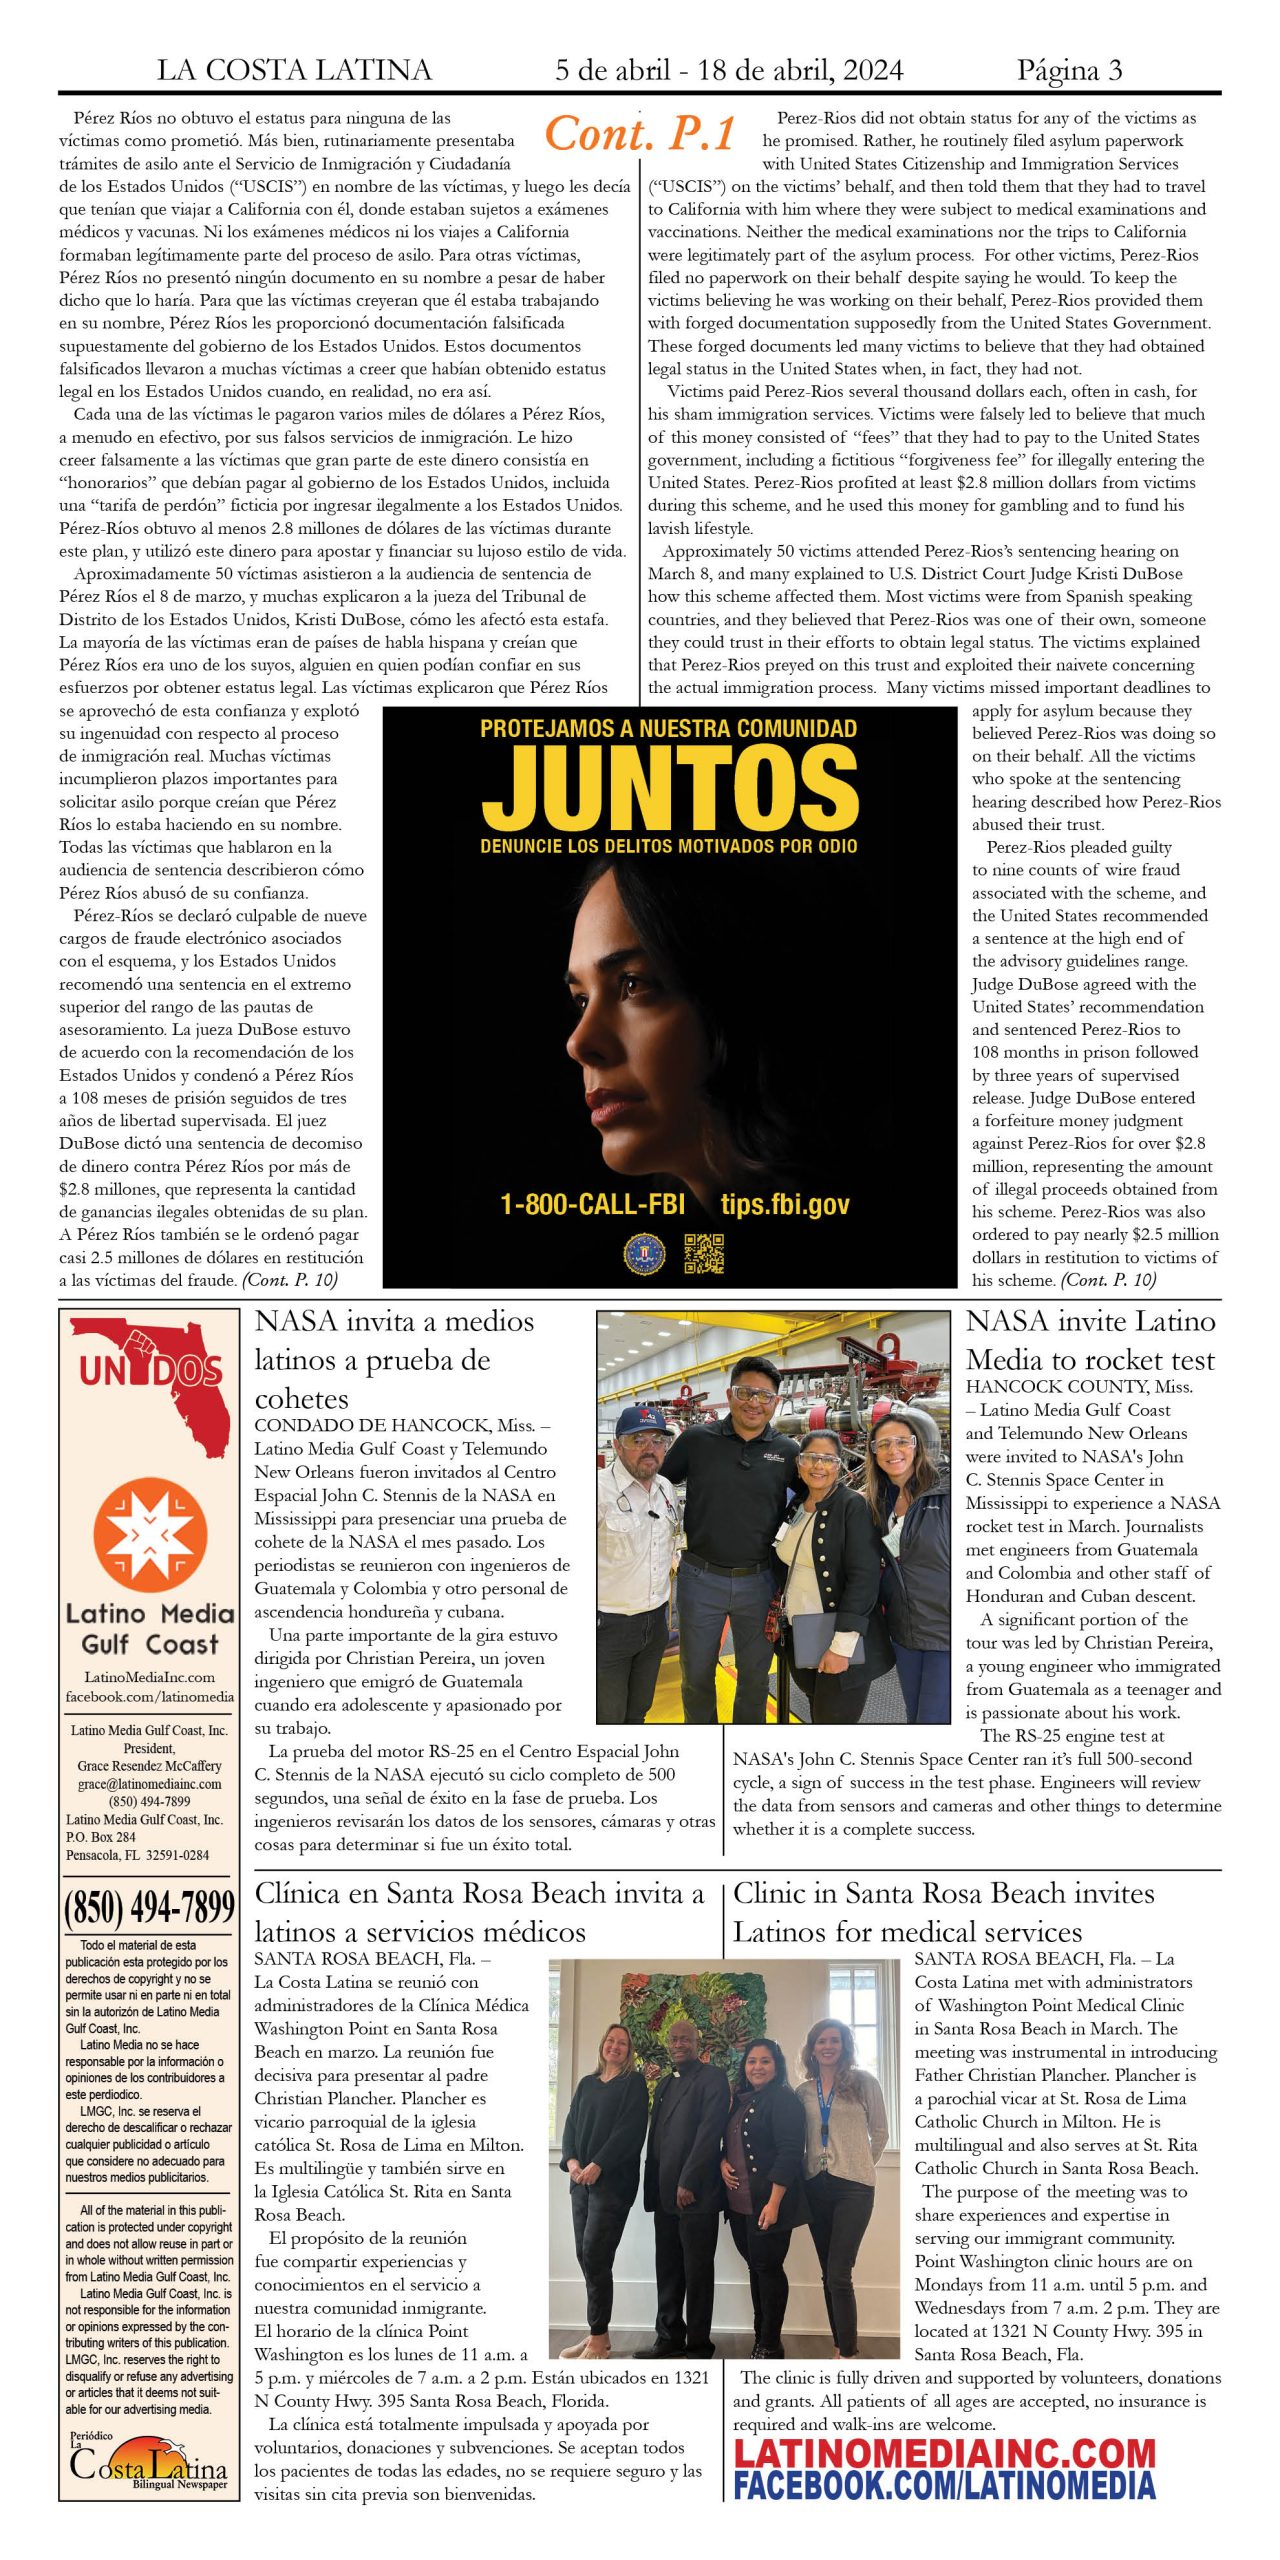 La Costa Latina April 5 - April 18, 2024 page 3